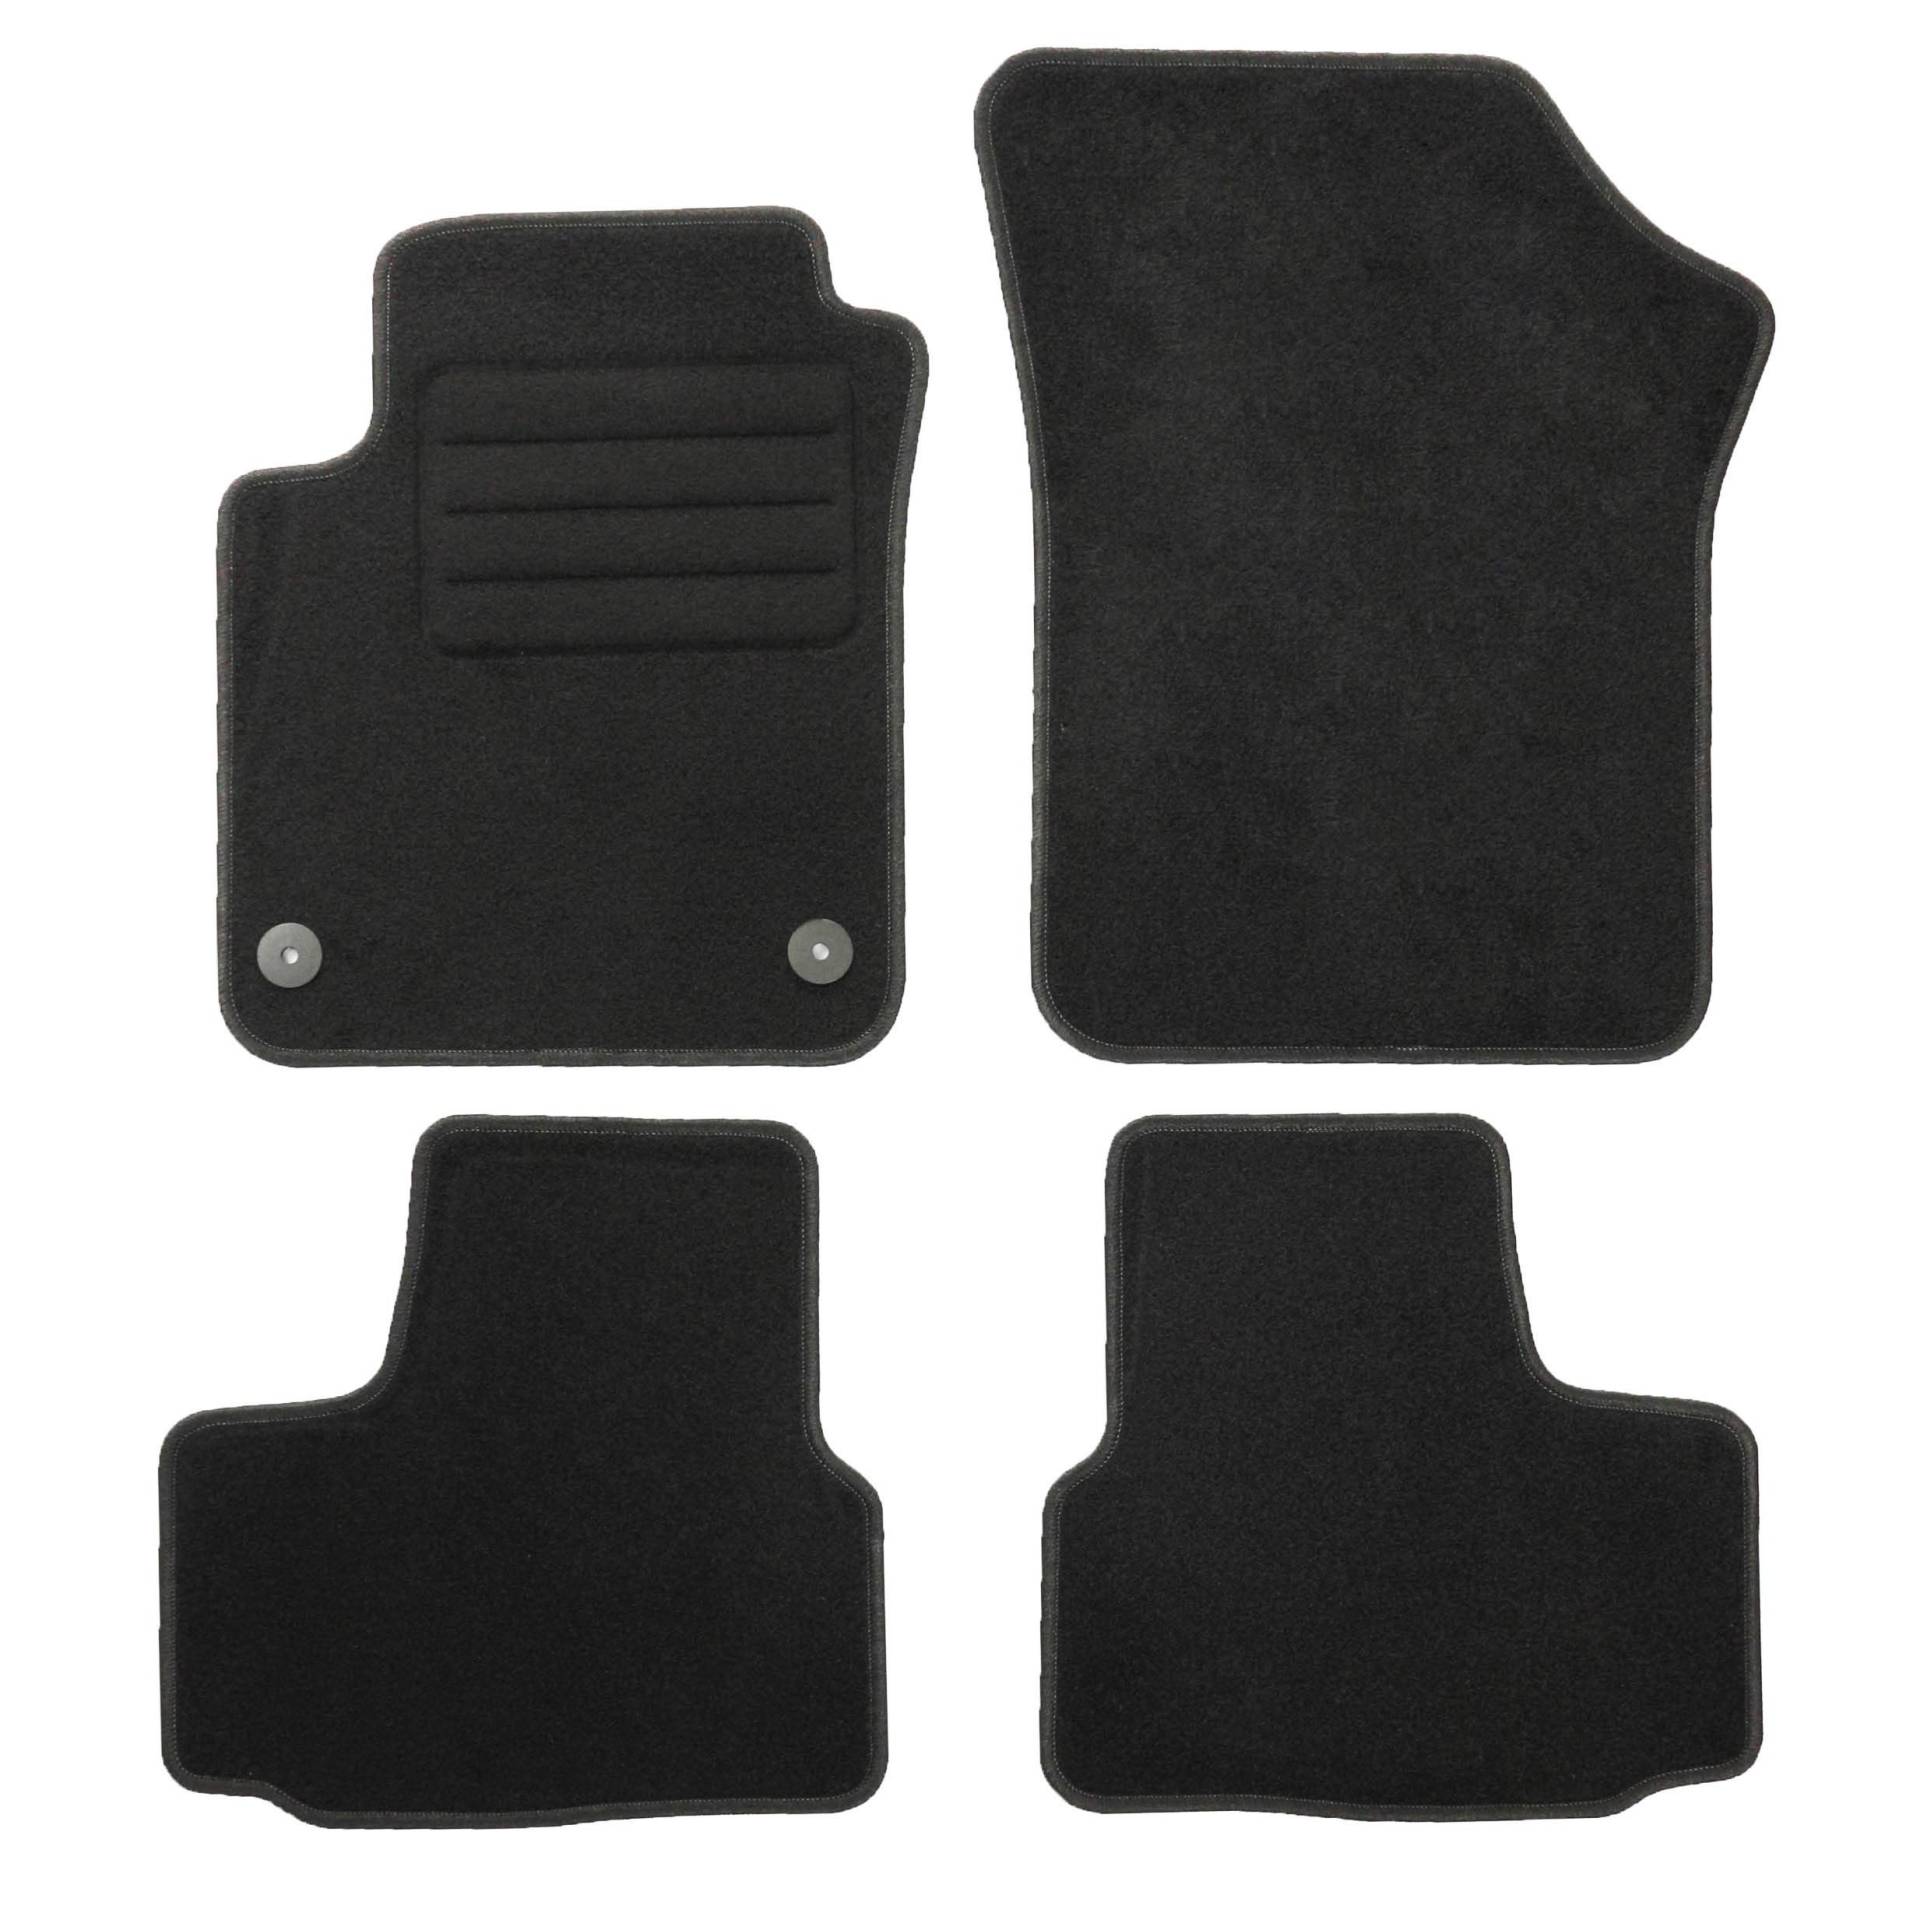 TEXER Textil Fußmatten Passend für Seat MII KF Bj. 2011- Basic von Car Mat Co